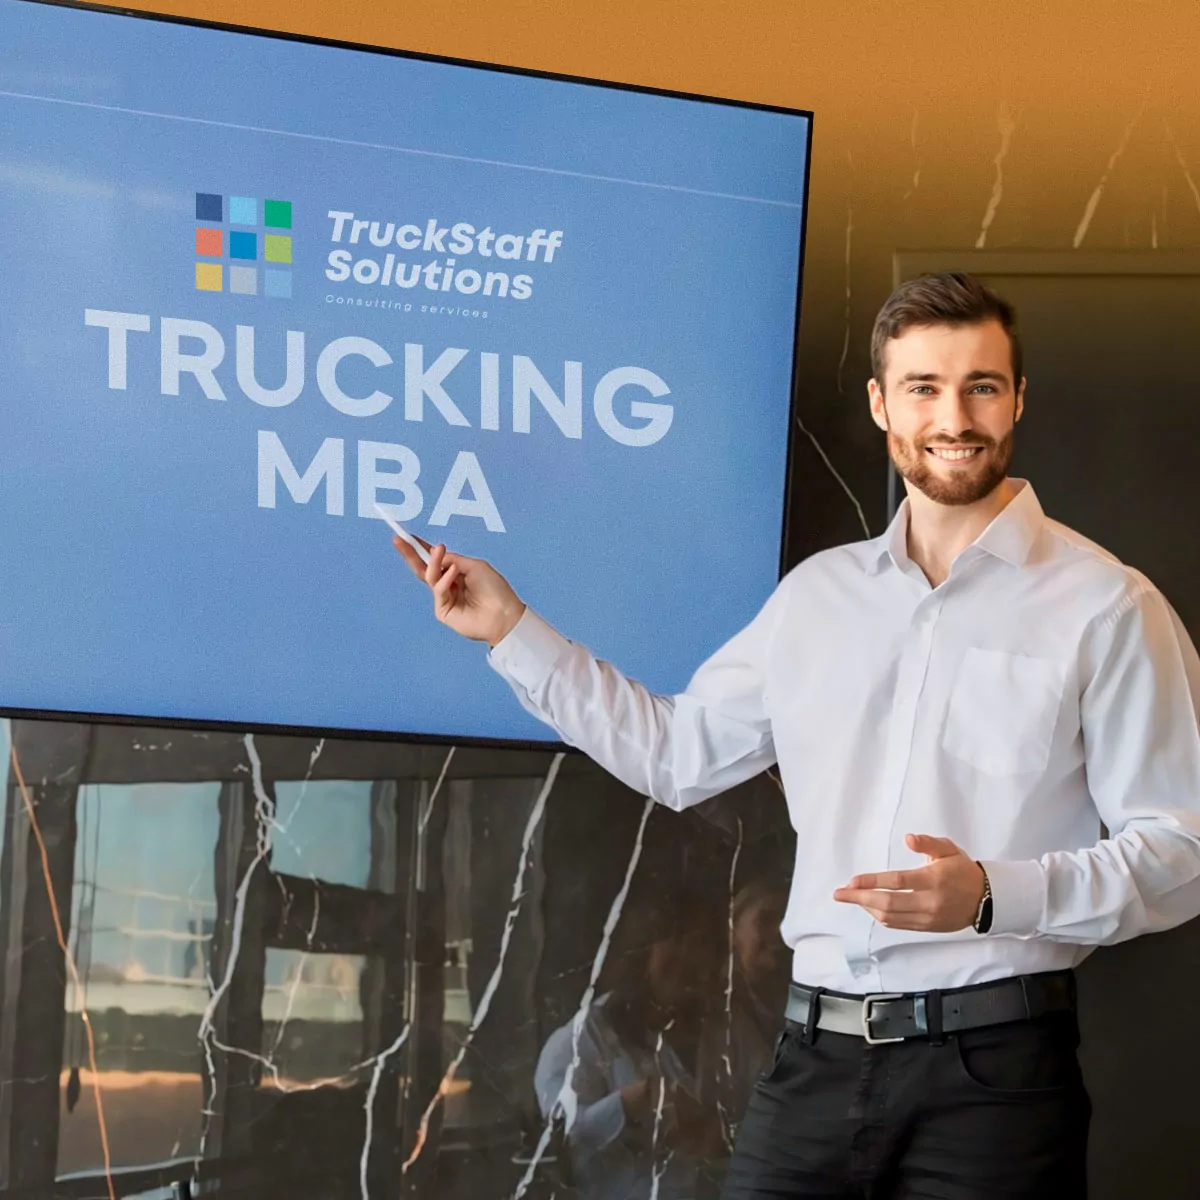 Trucking MBA Program - Truckstaff